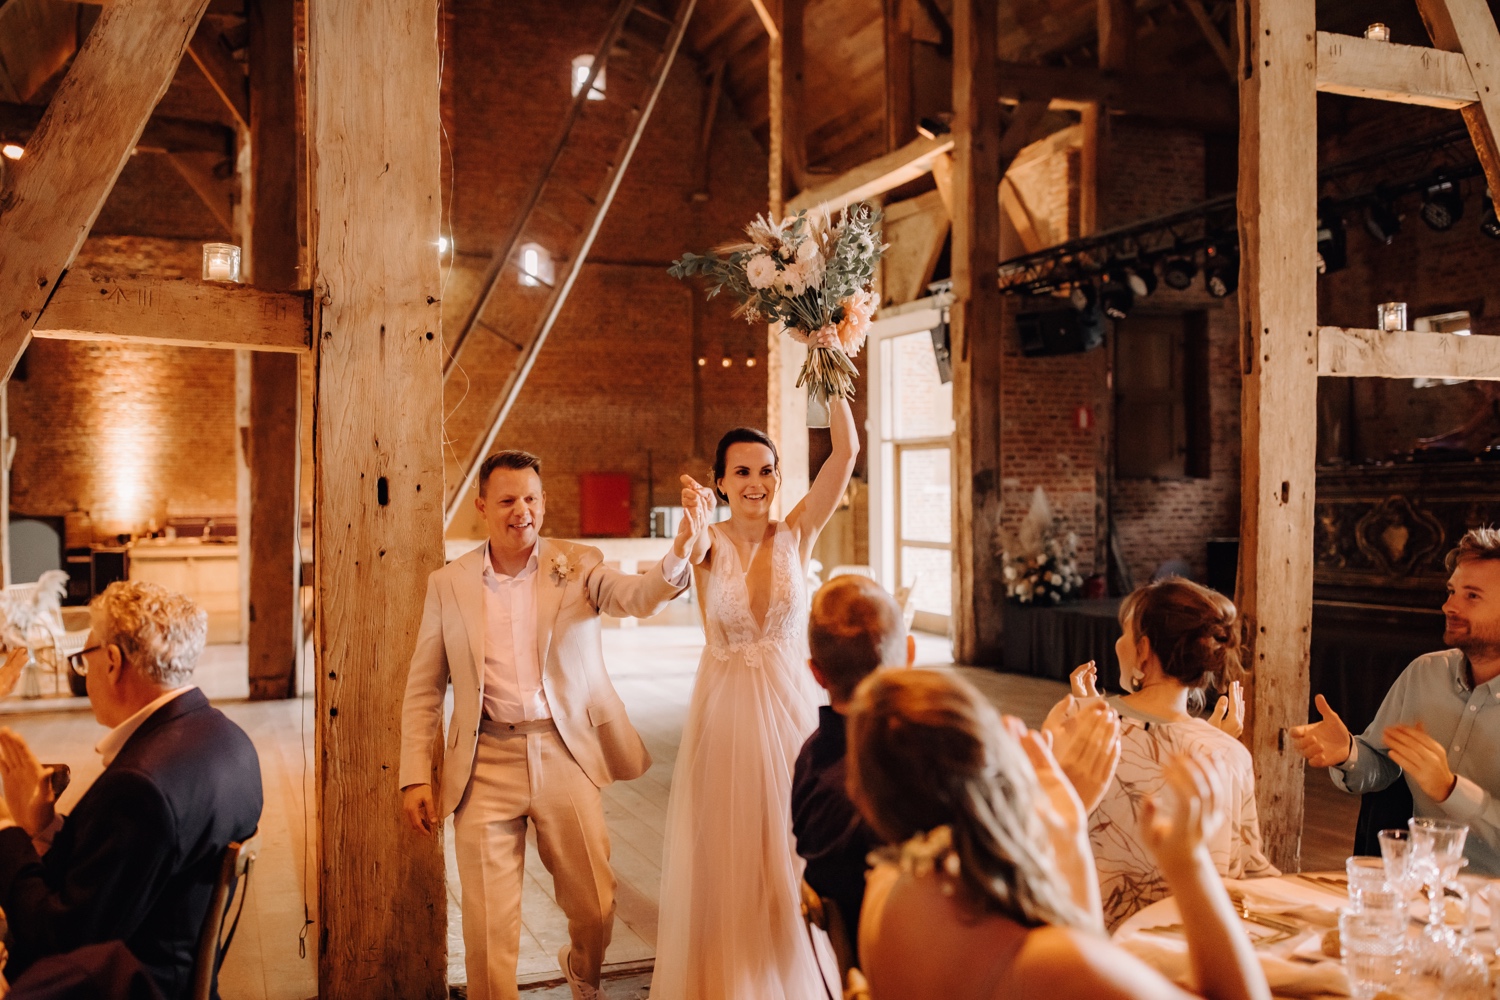 Huwelijksfotograaf Limburg - bruidspaar maakt intrede in de feestzaal